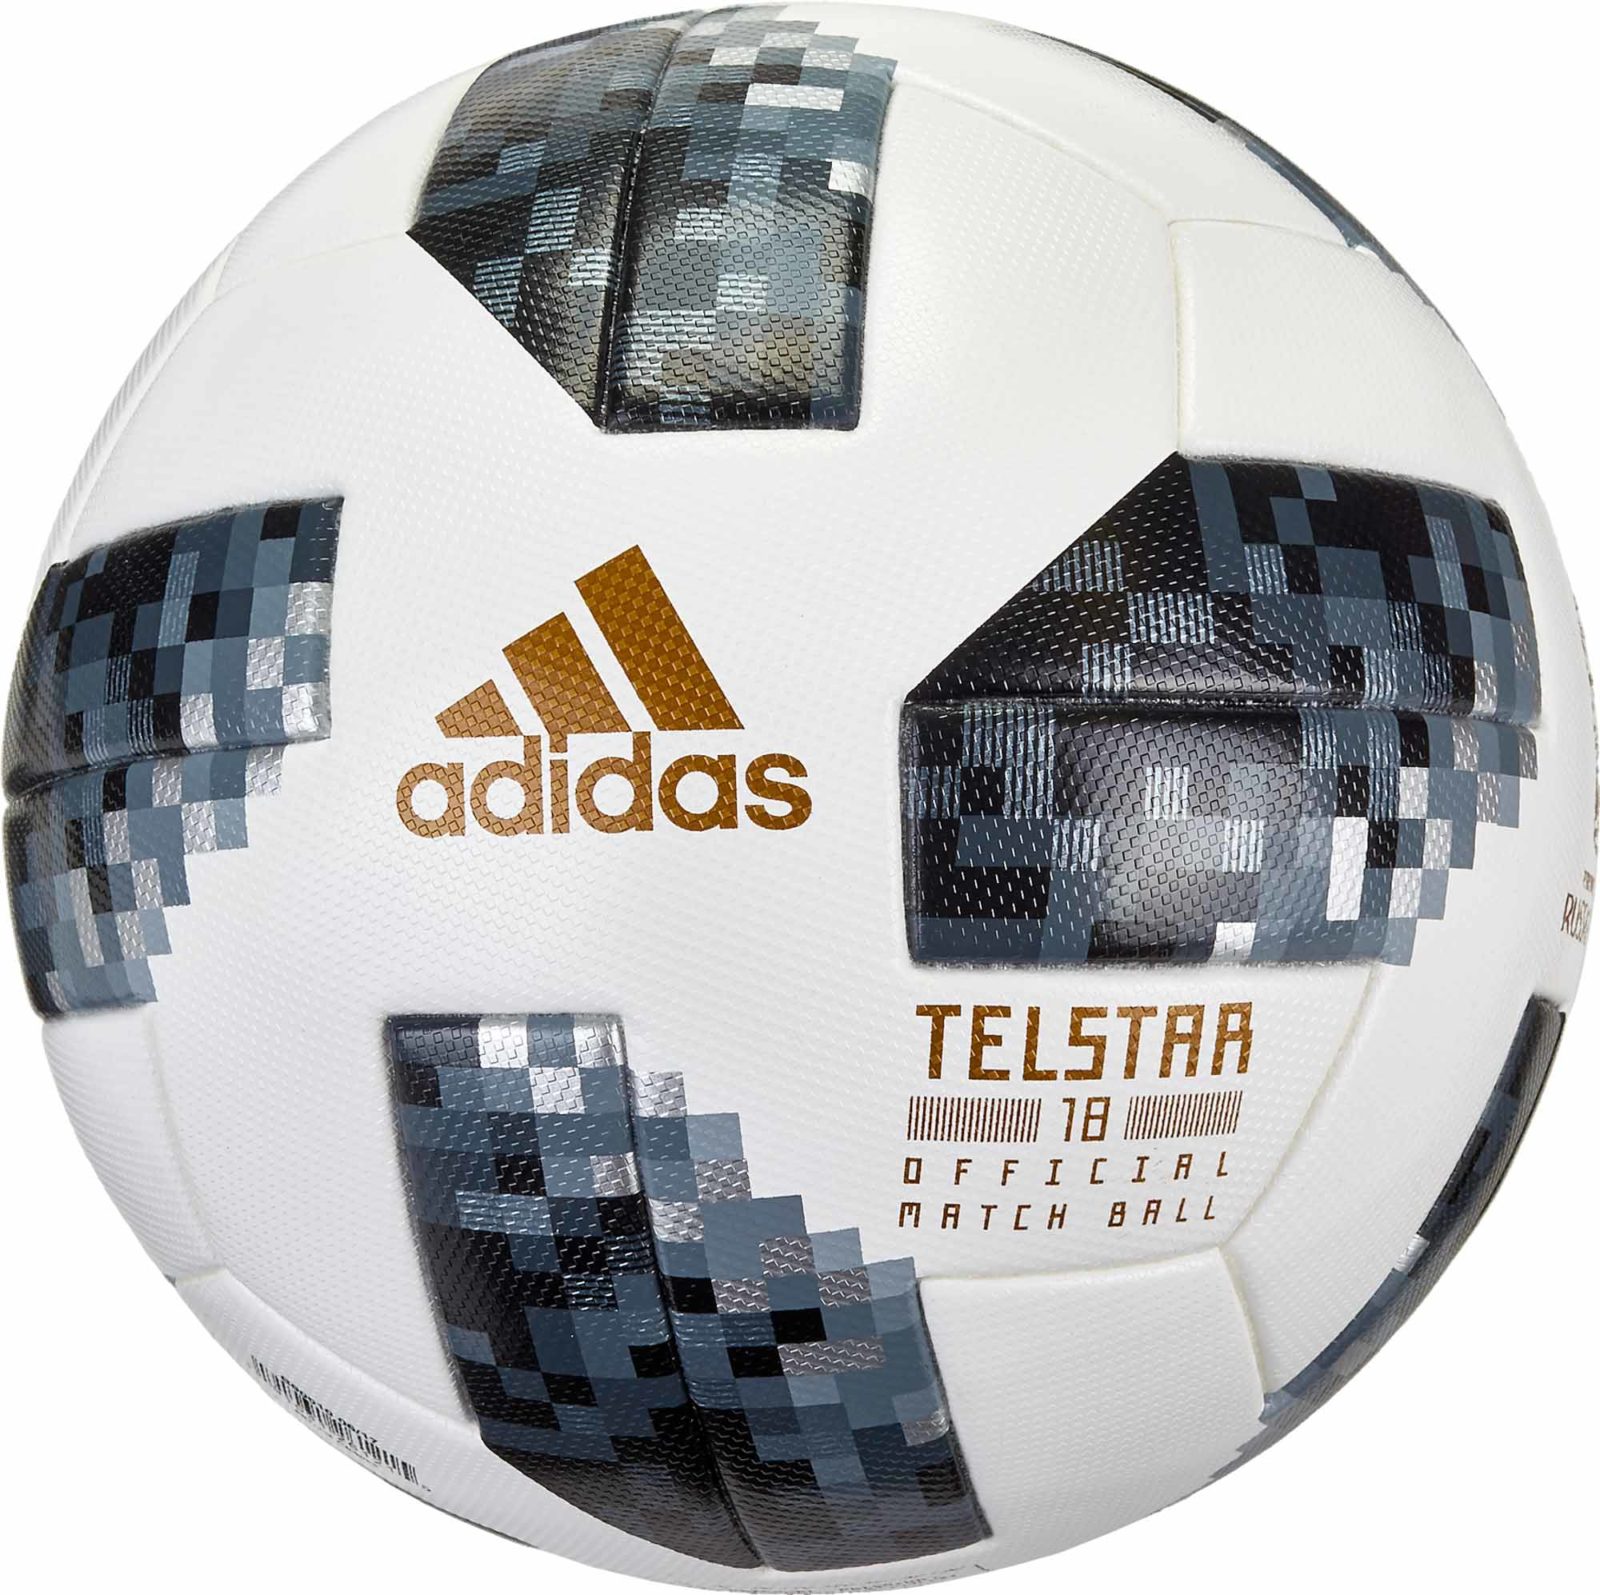 ce8083_adidas_telstar_18_world_cup_match_ball_01.jpg